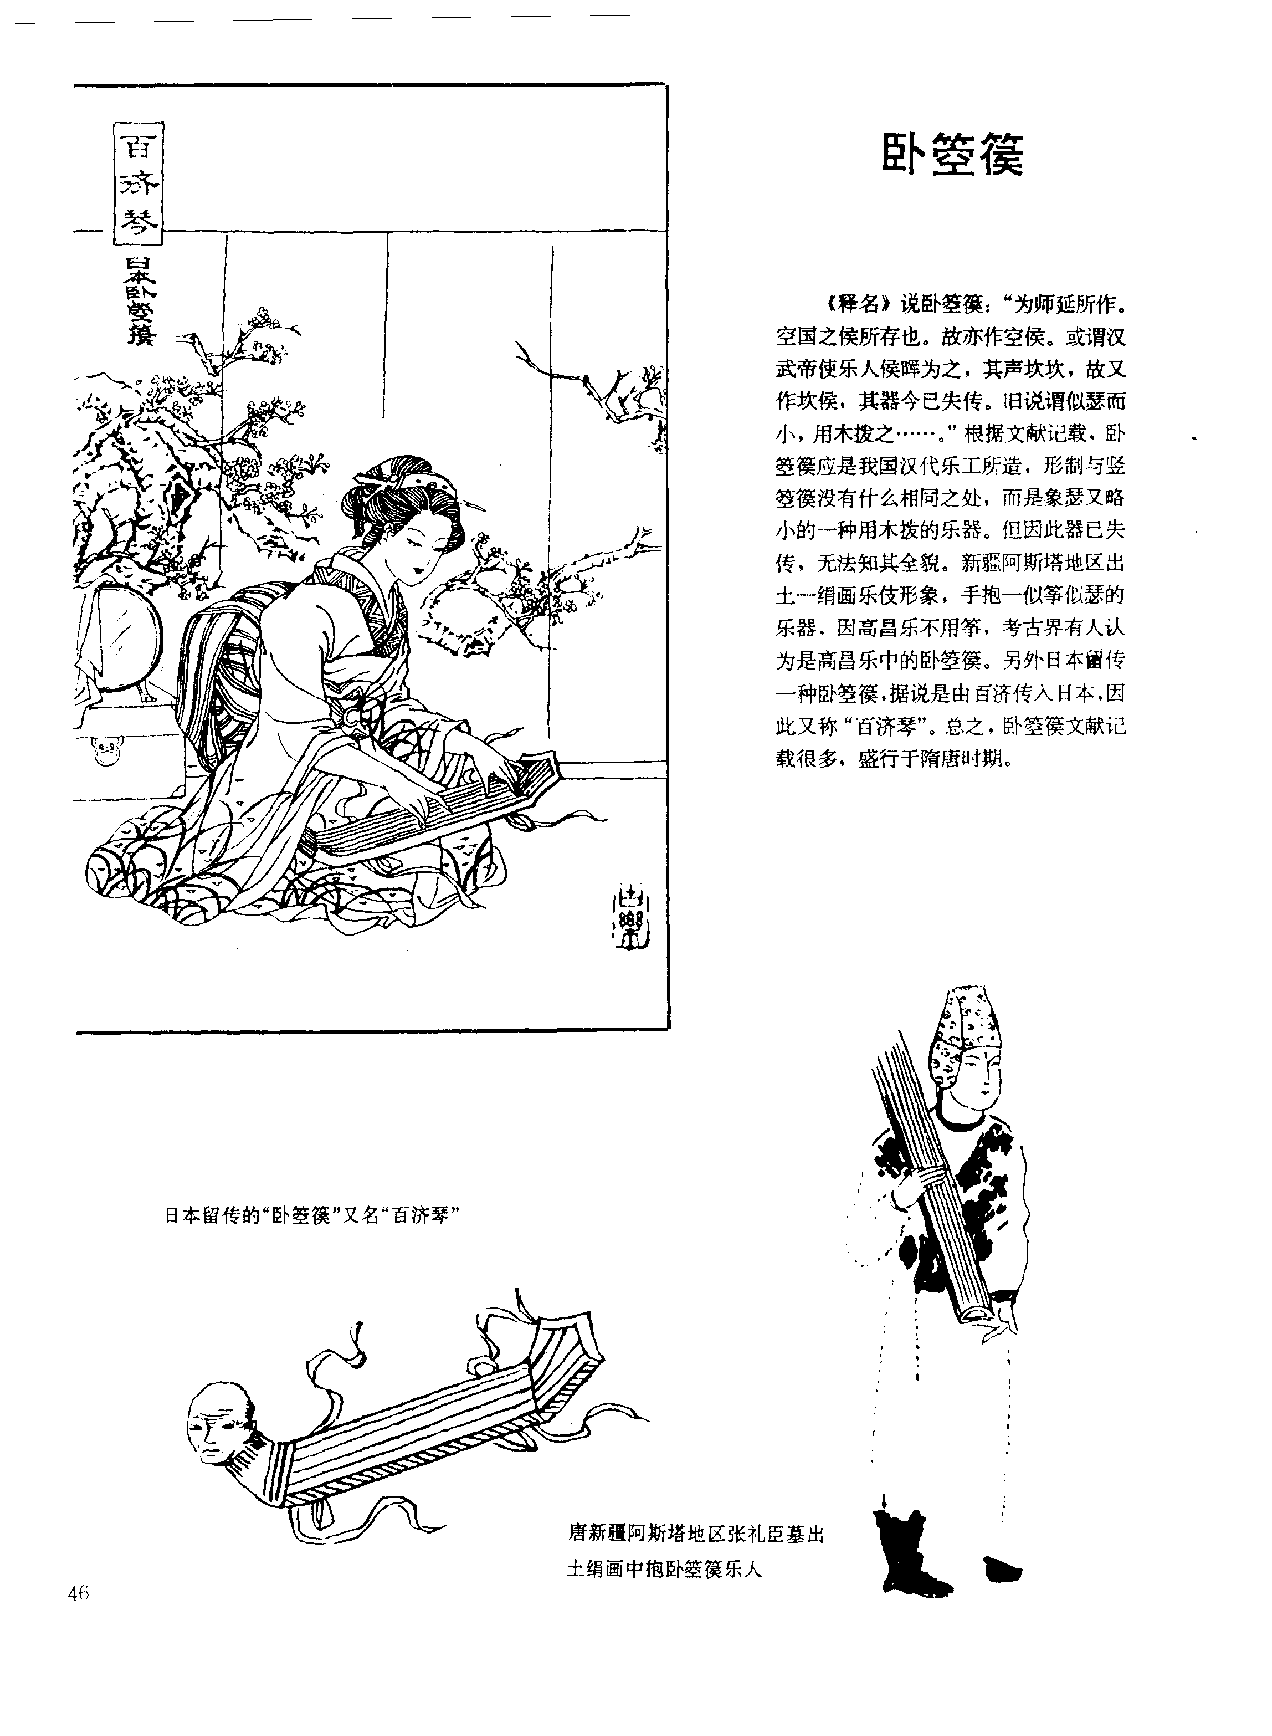 中国古代乐器《卧箜篌》